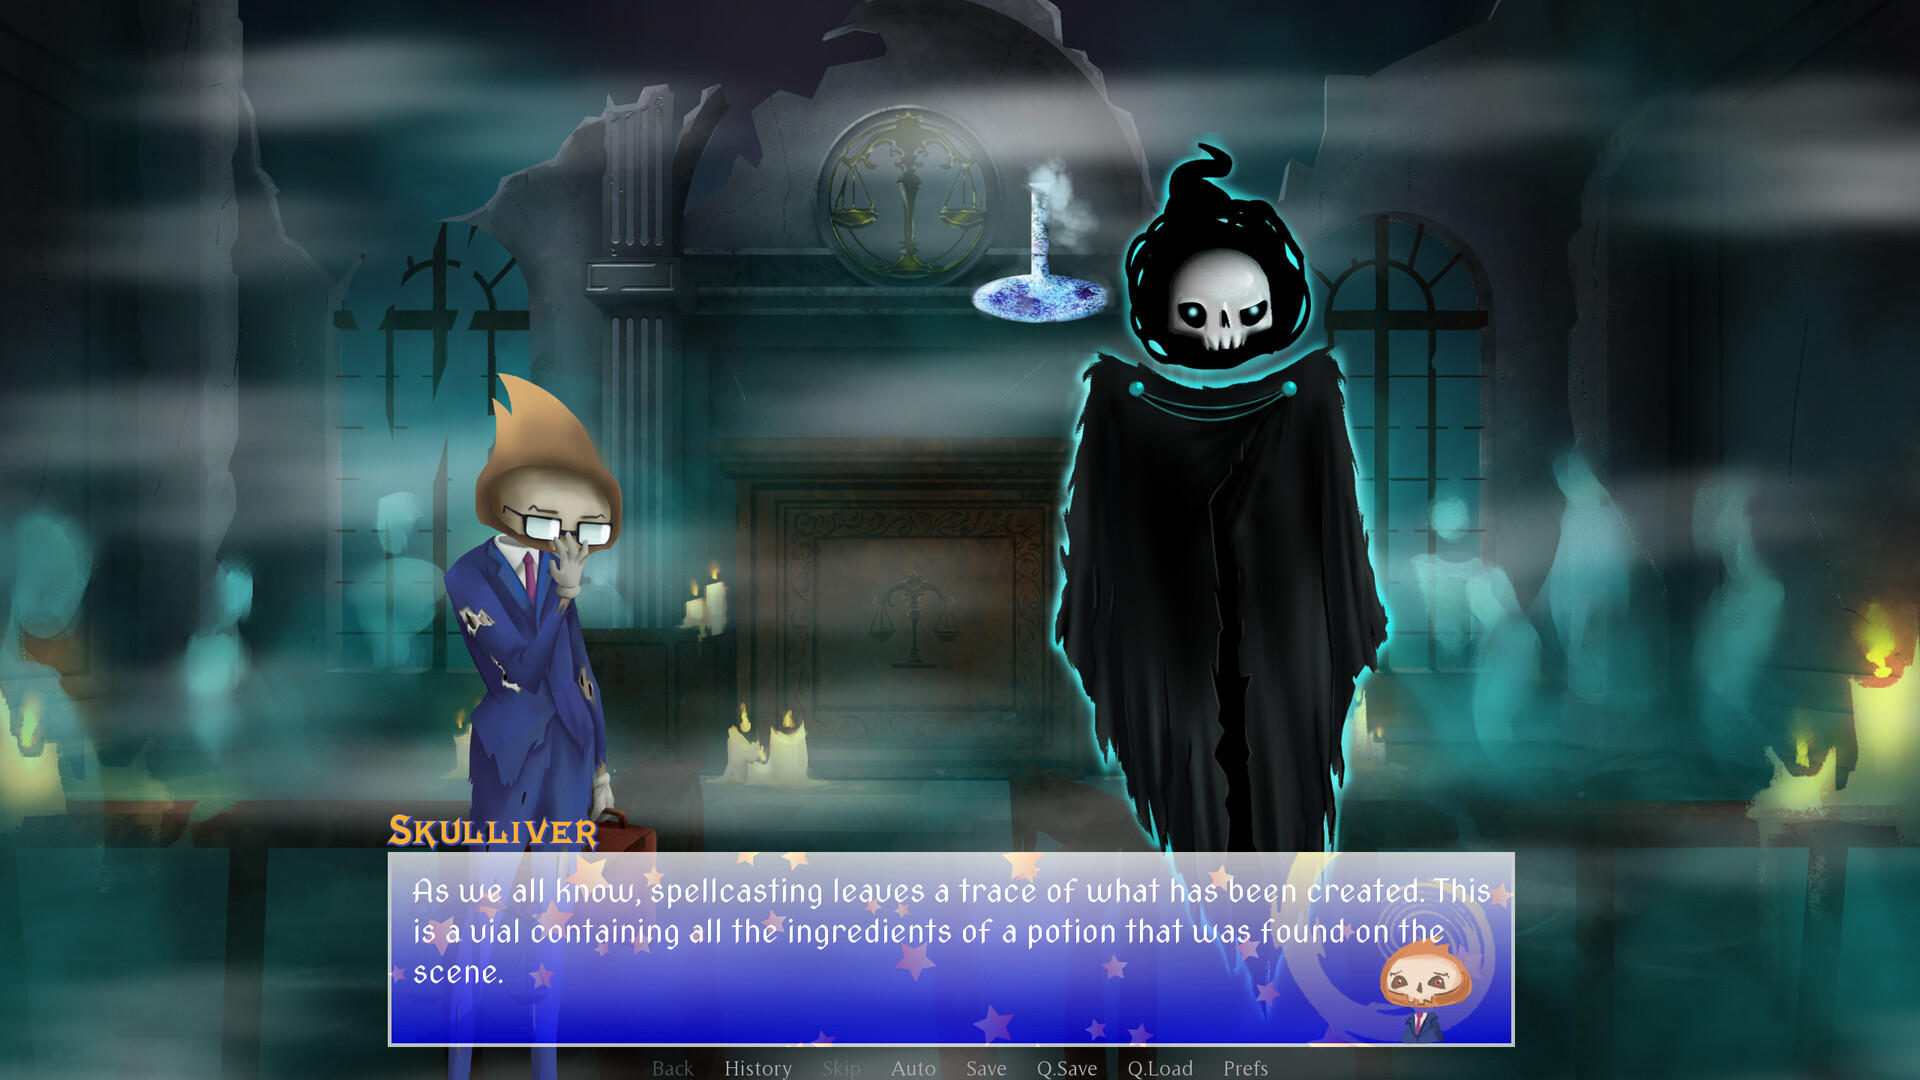 Screenshot of Grim's Gambit